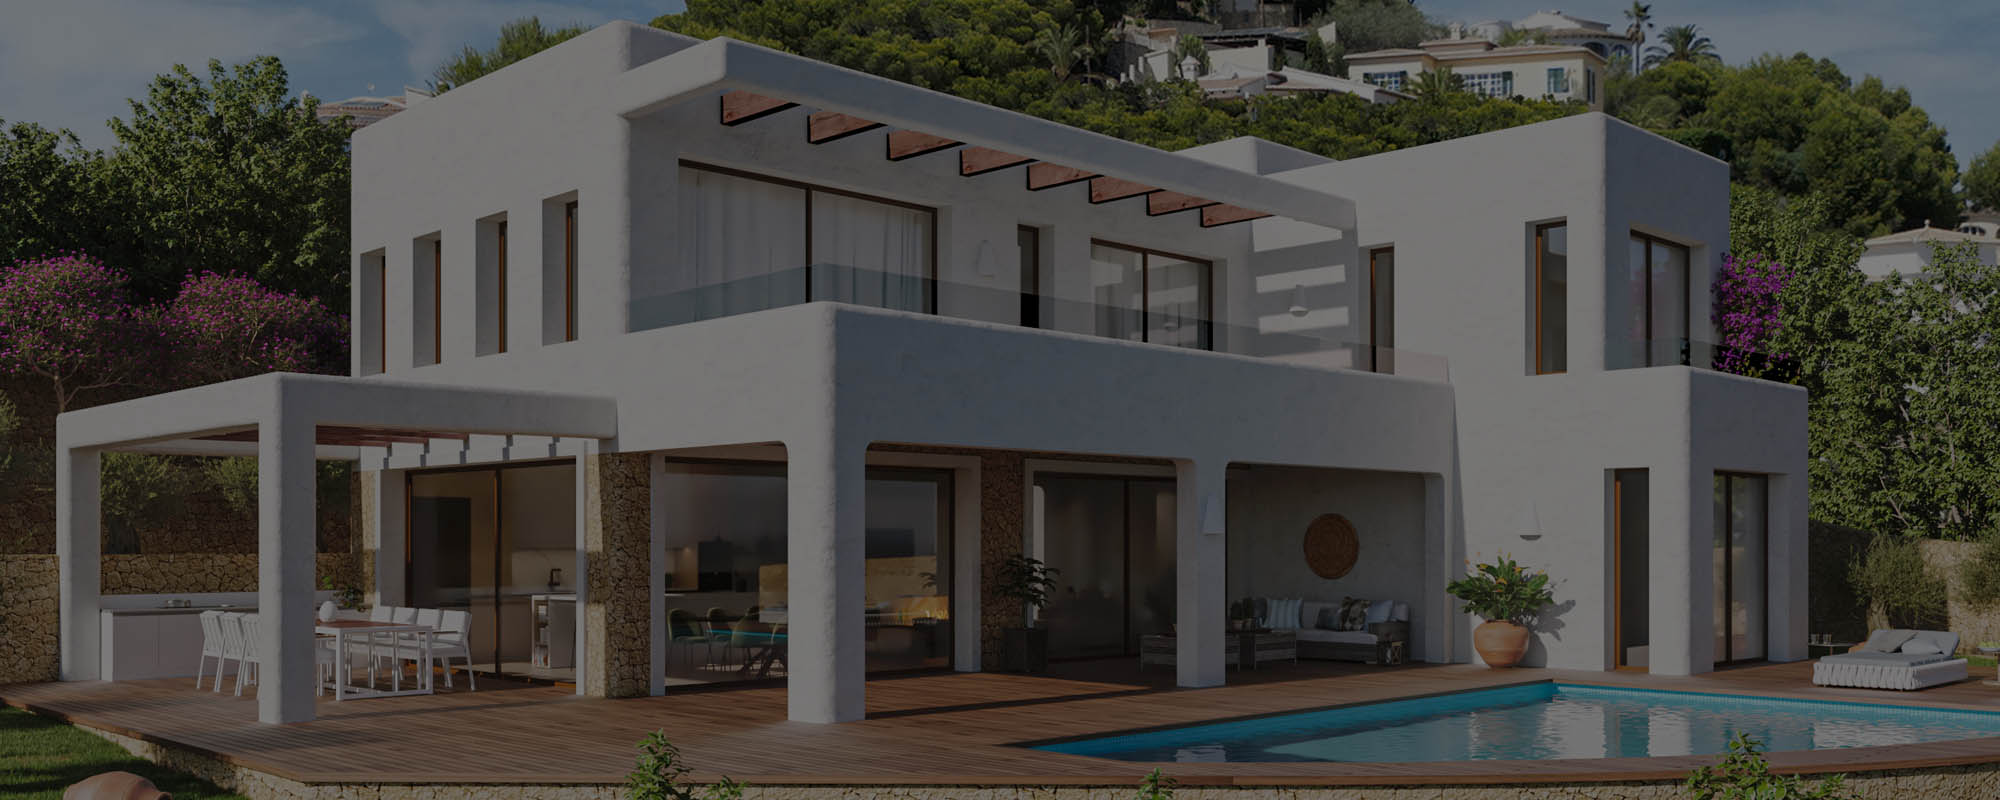 Renders 3D de una casa típica ibicenca con inspiración mediterránea